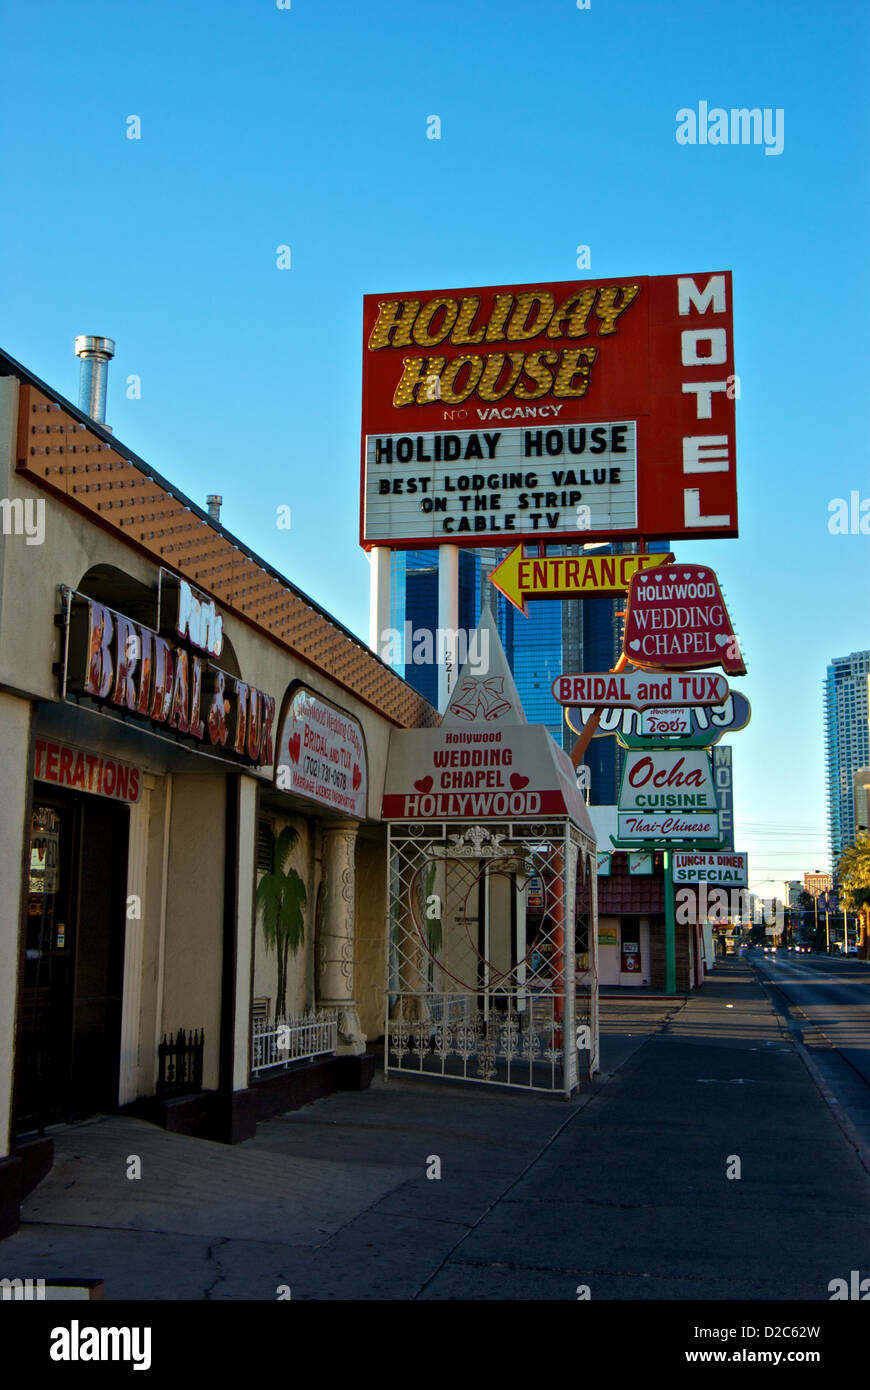 Cutre vieja sección del Boulevard Las Vegas Strip Hollywood Wedding Chapel Holiday House Motel Foto de stock